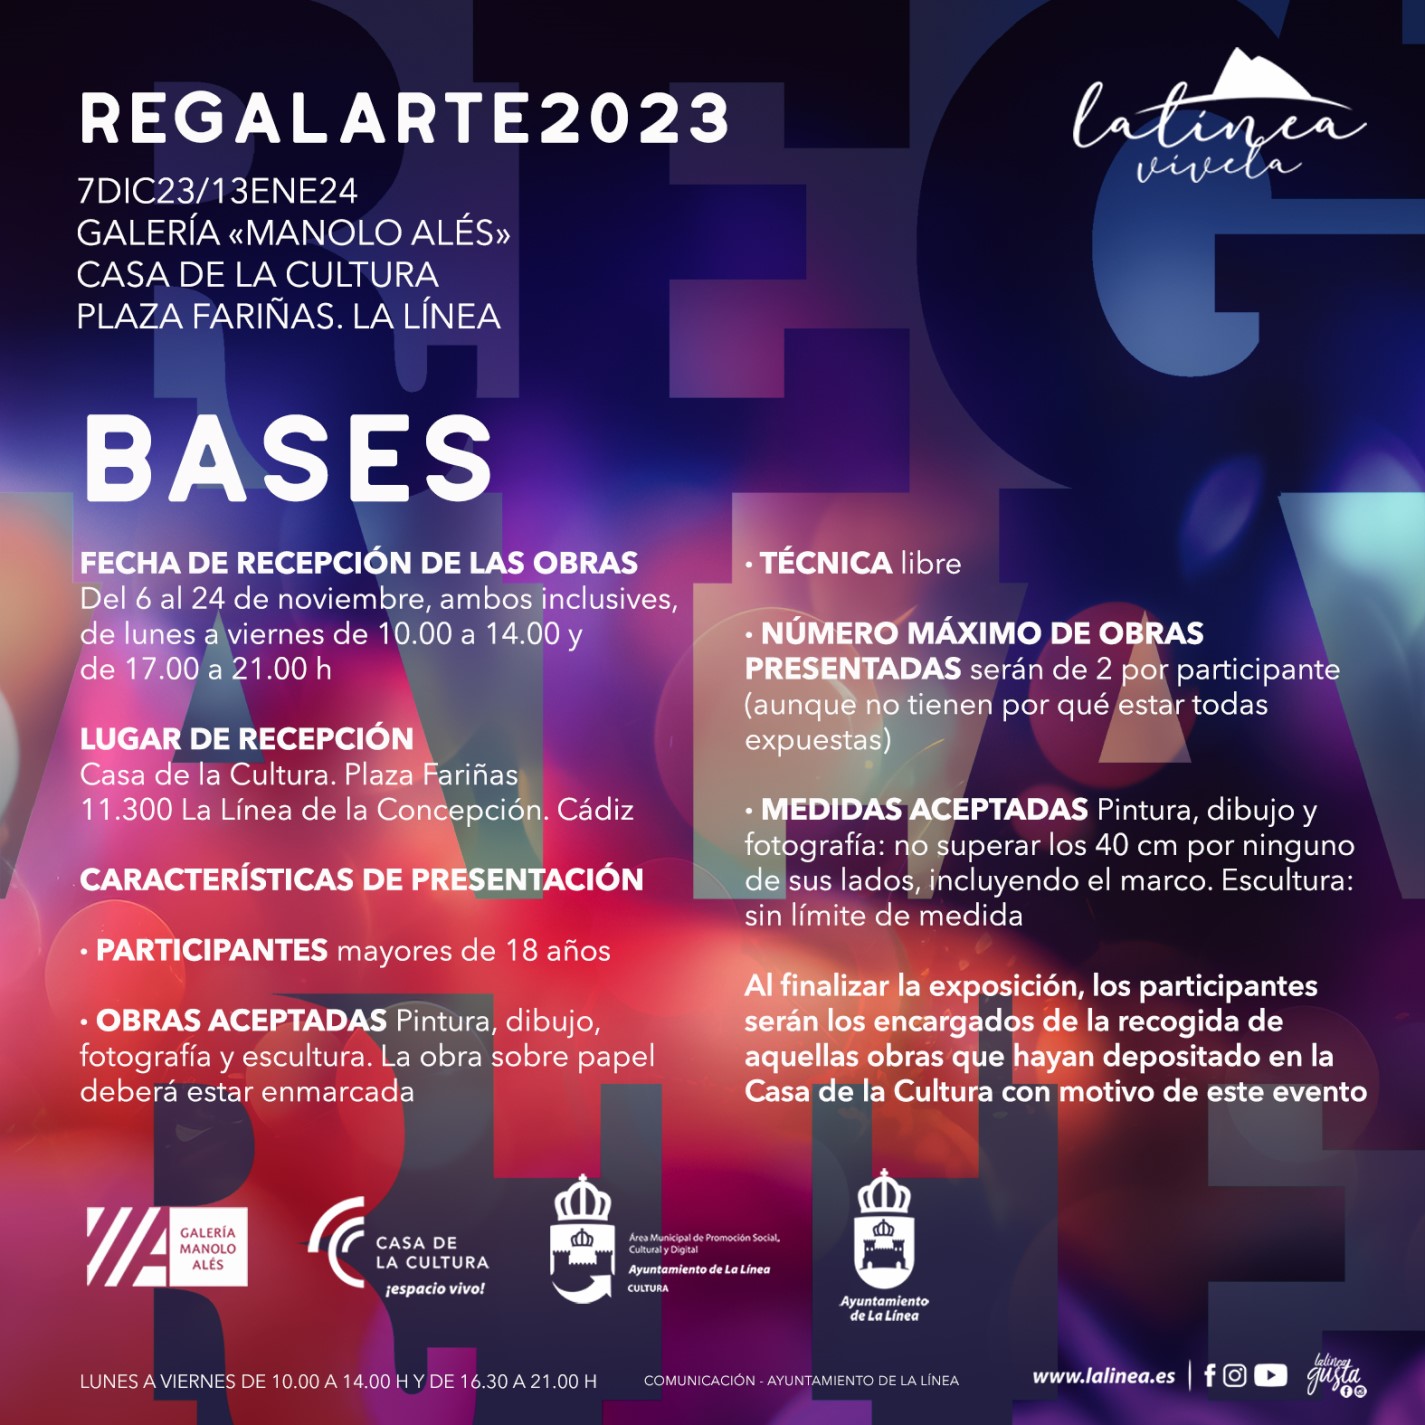 RRSS Bases Regalarte 2023